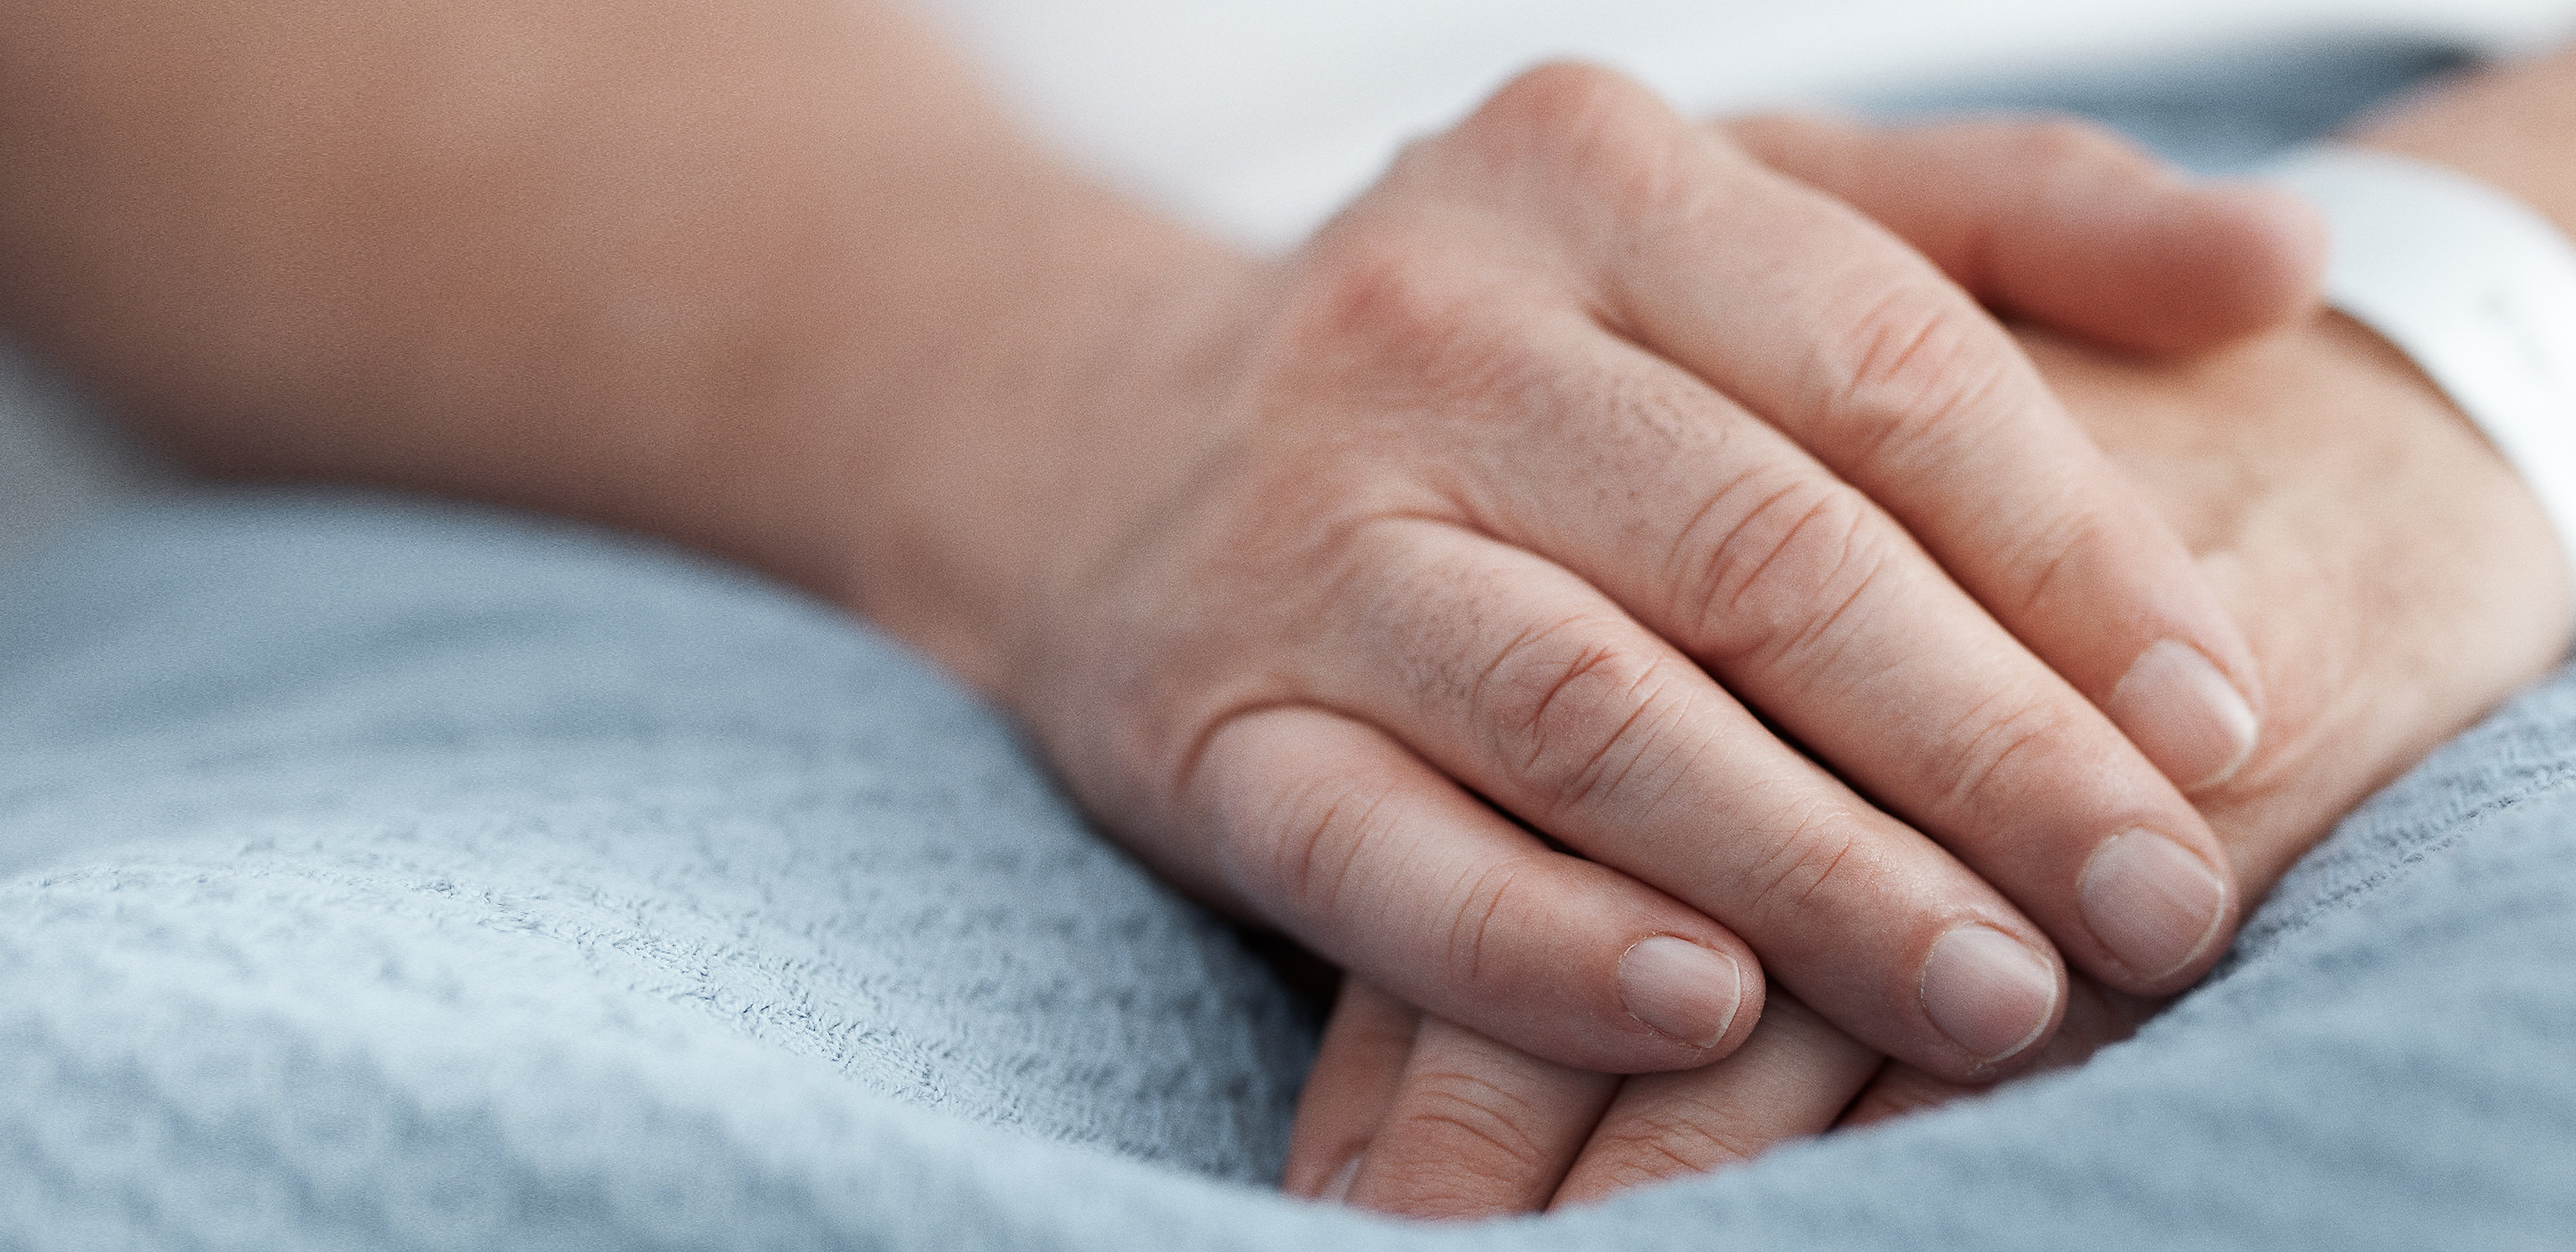 Las manos de un paciente se apoyan tranquilamente sobre su manta en una cama de hospital